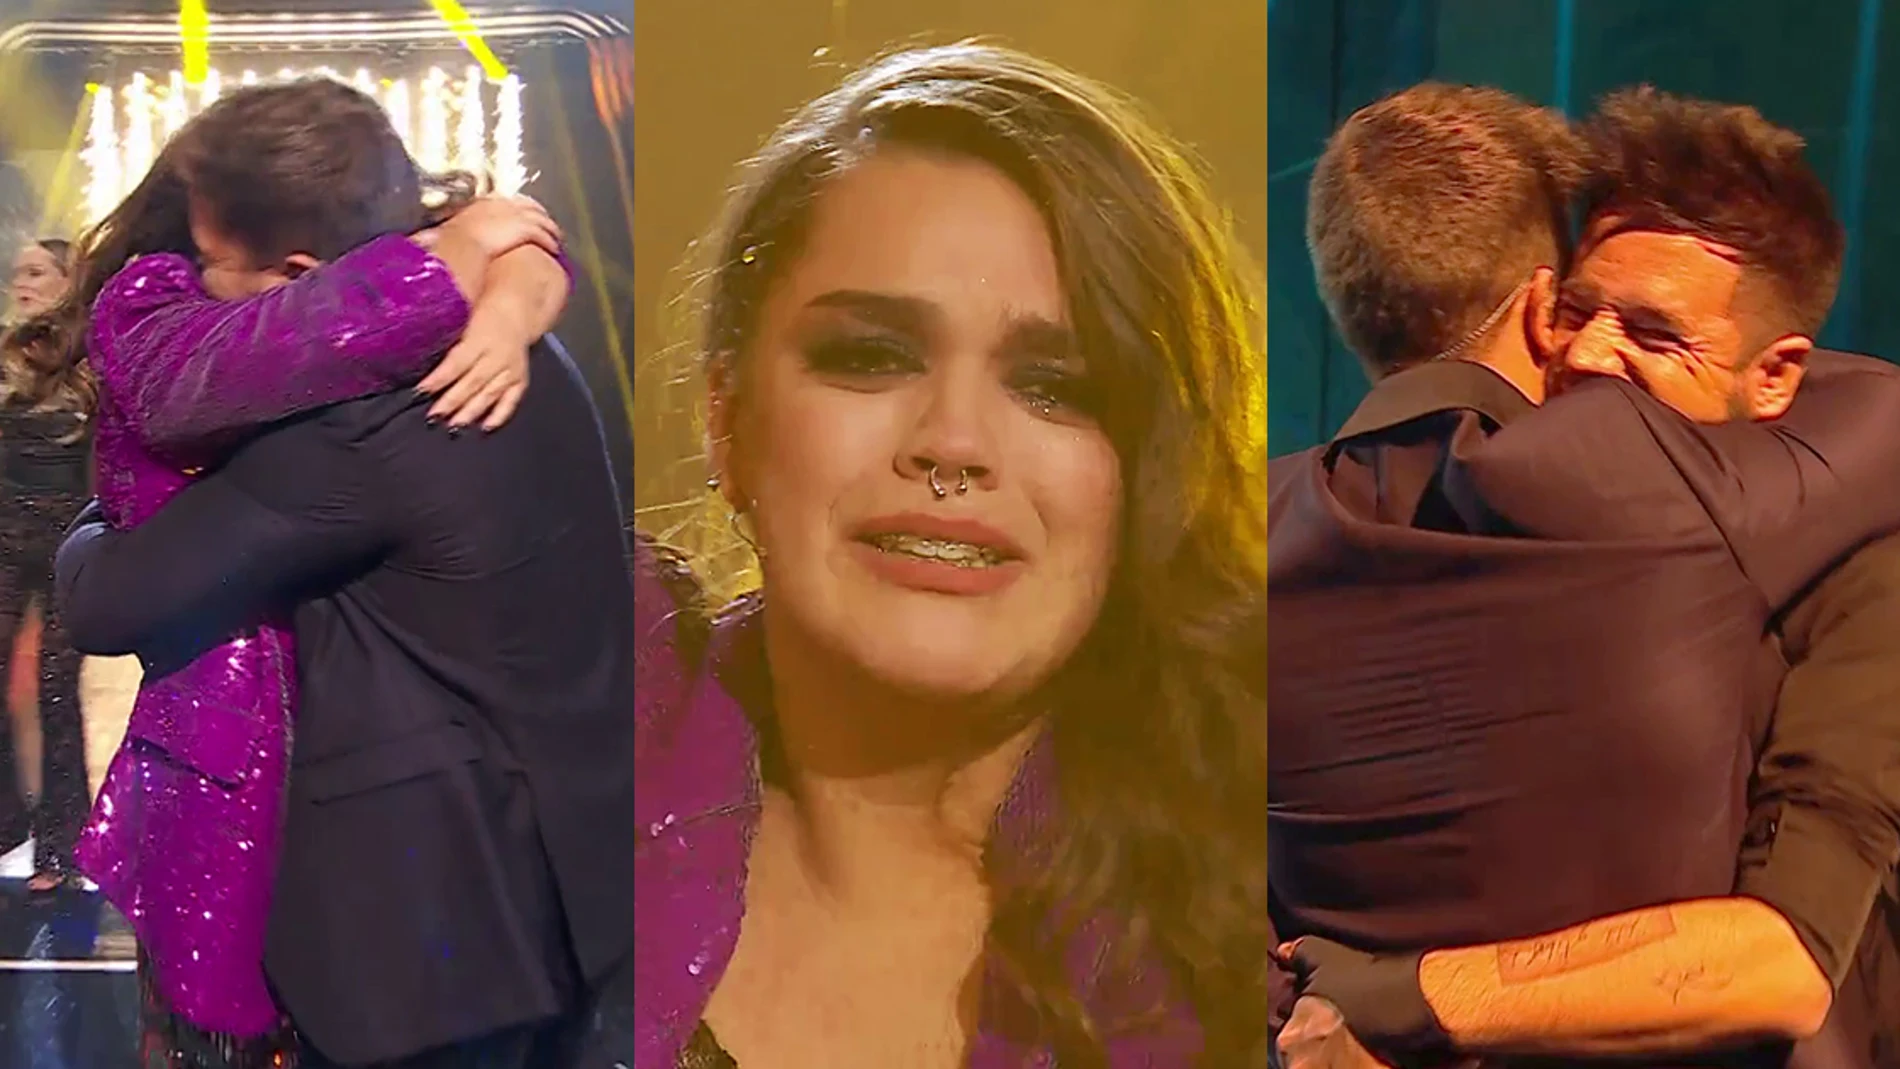 El TOP 5 de la Gran Final de 'La Voz': Inés es la ganadora entre lágrimas y mucho cariño de los coaches